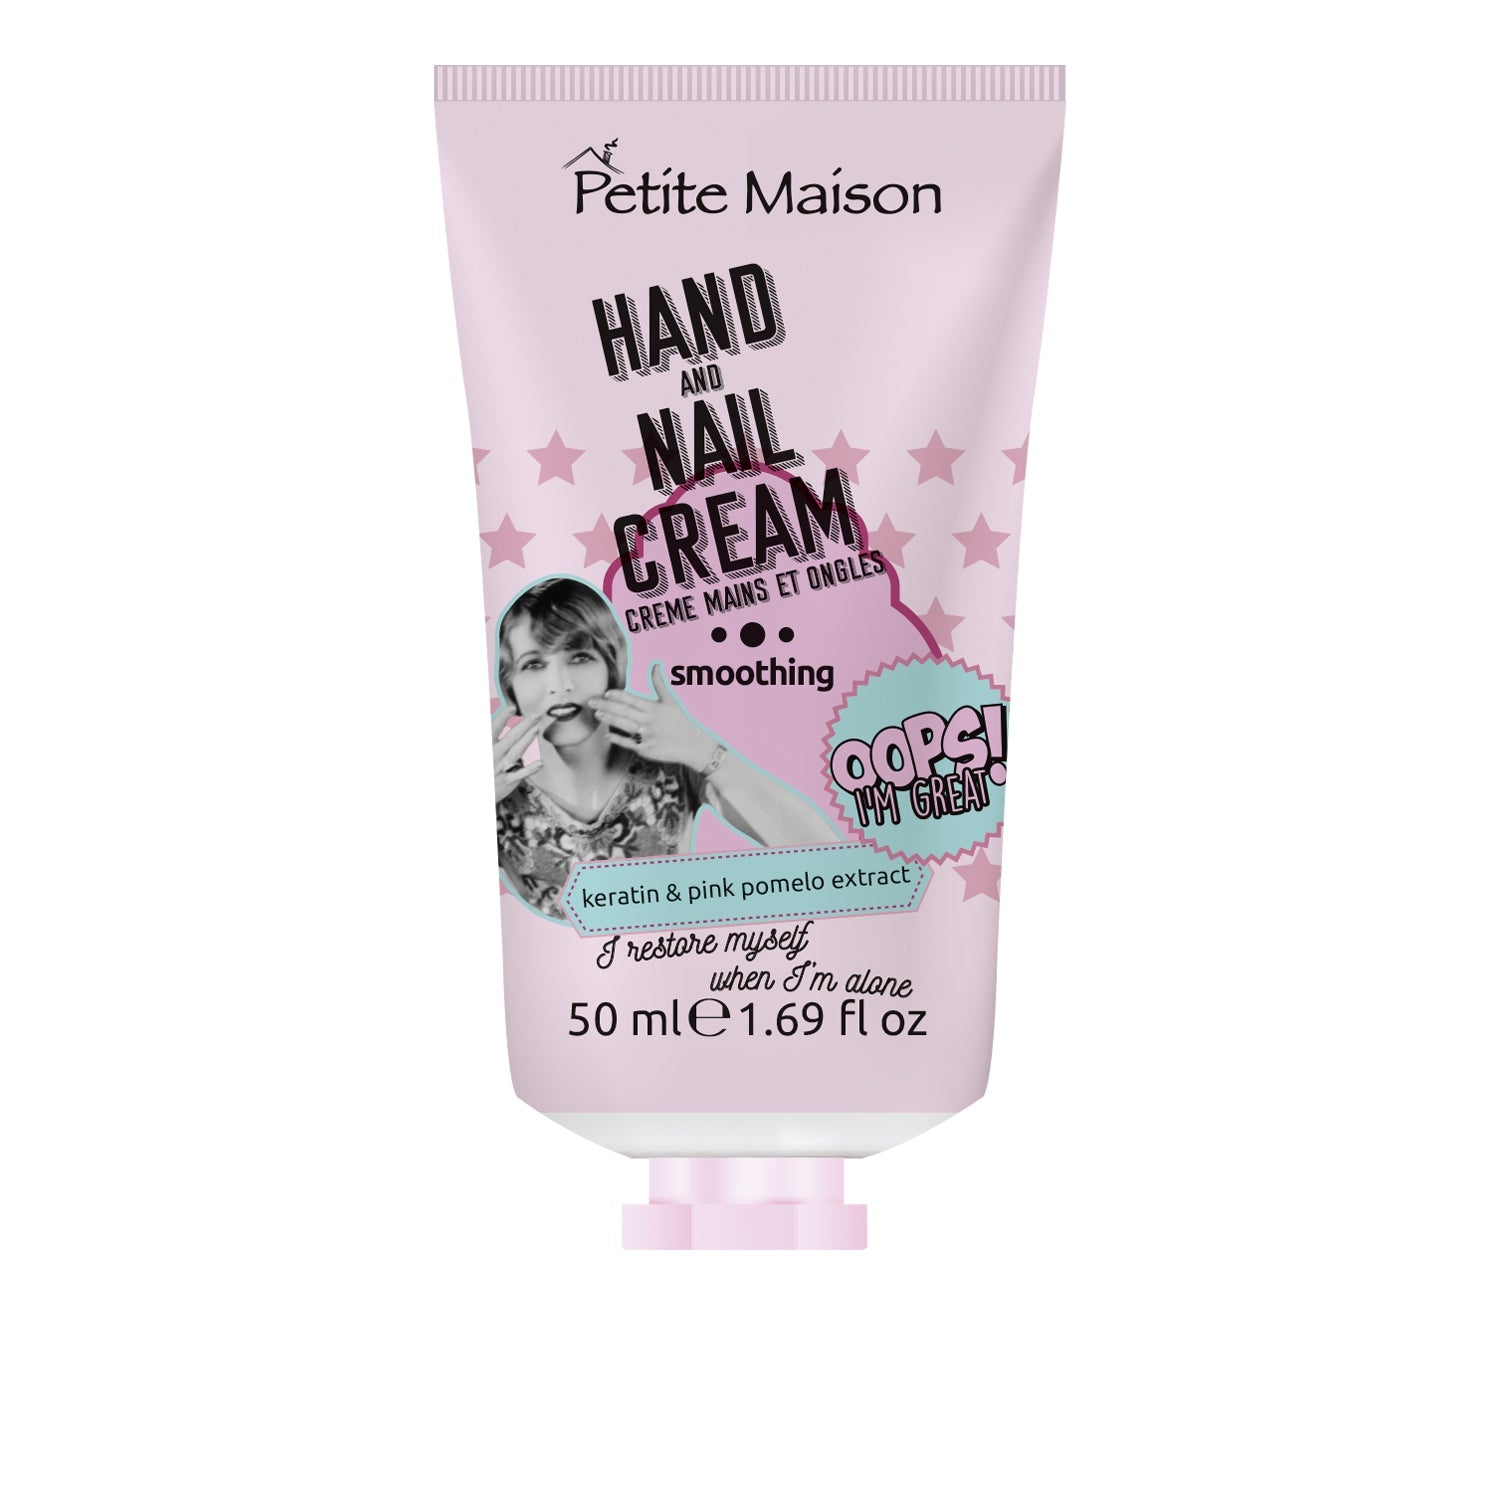 Petite Maison Hand and Nail Cream Smoothing - IZZAT DAOUK Lebanon